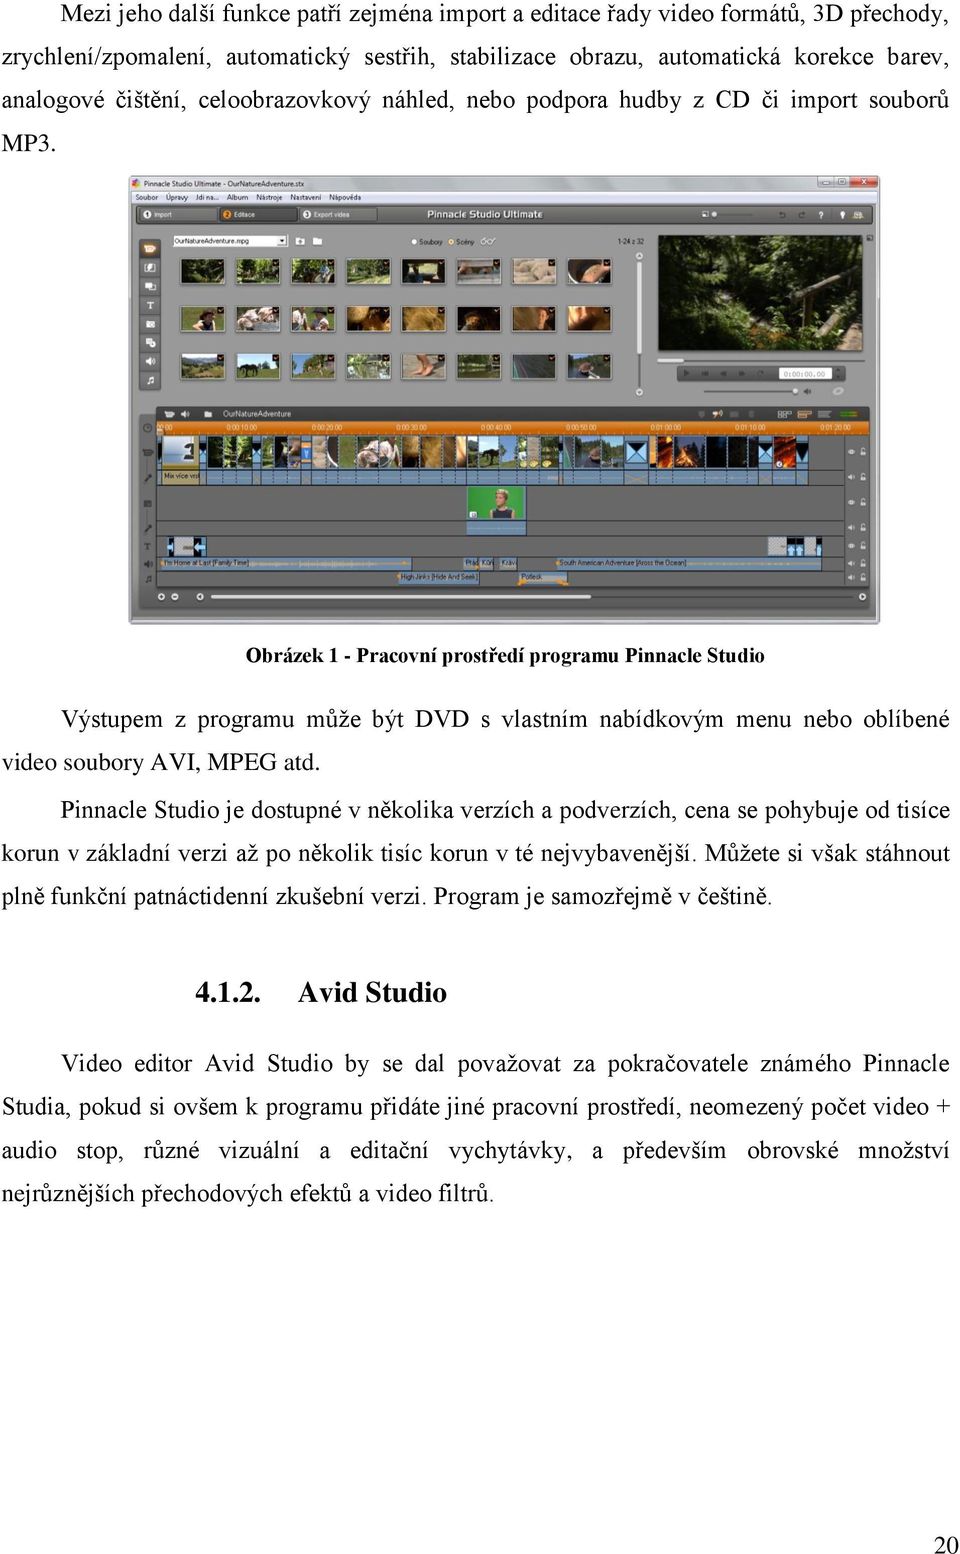 Obrázek 1 - Pracovní prostředí programu Pinnacle Studio Výstupem z programu může být DVD s vlastním nabídkovým menu nebo oblíbené video soubory AVI, MPEG atd.